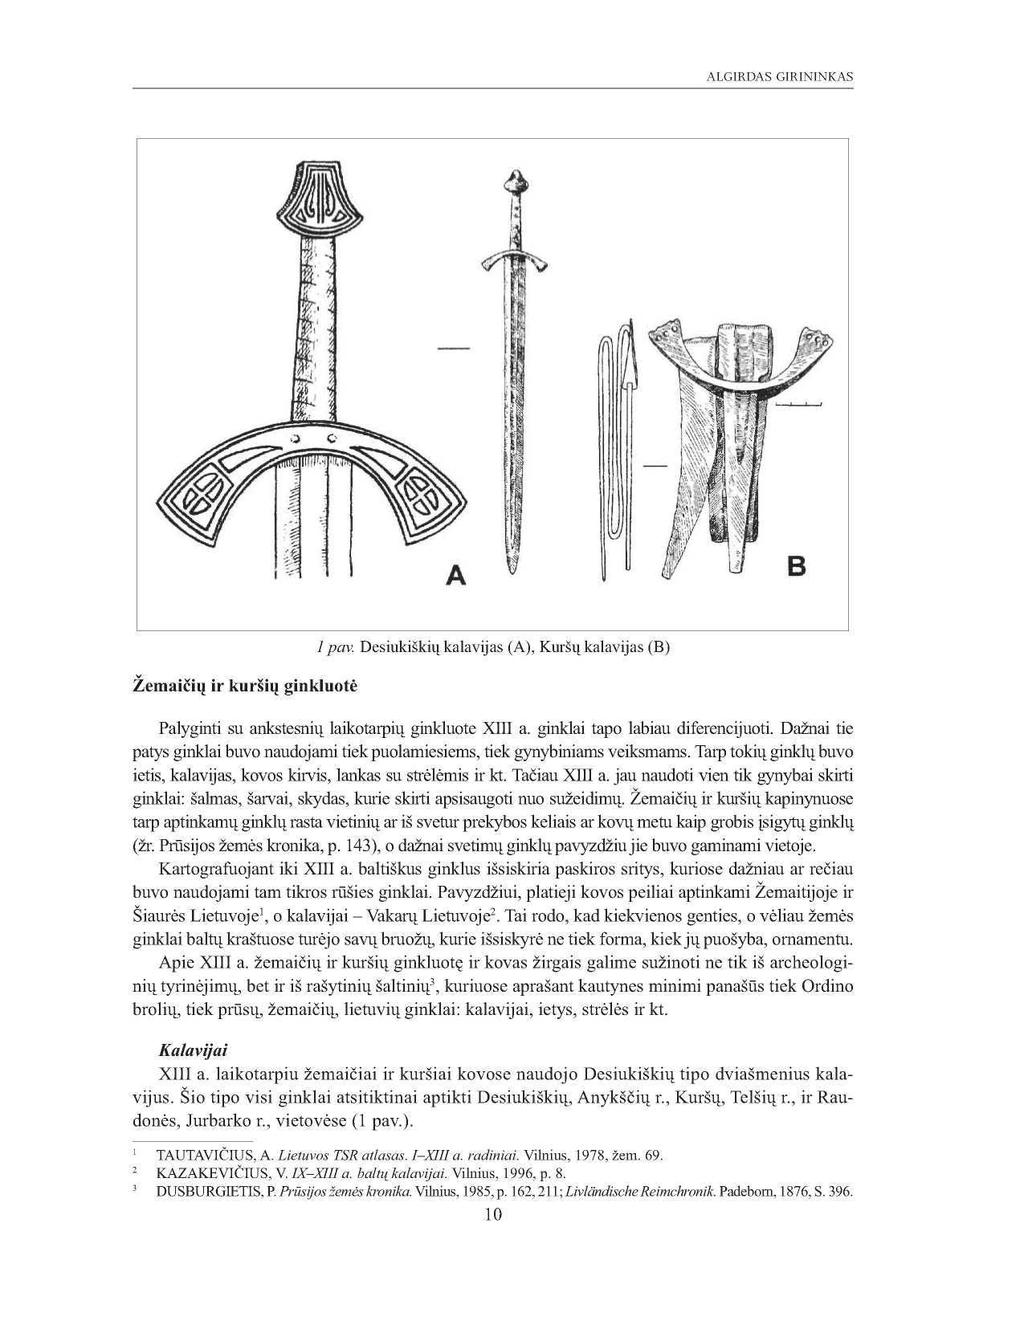 ALGIRDAS GIRININKAS Žemaičių ir kuršių ginkluotė 1 pav. Desiukiškių kalavijas (A), Kuršų kalavijas (B) Palyginti su ankstesnių laikotarpių ginkluote XIII a. ginklai tapo labiau diferencijuoti.